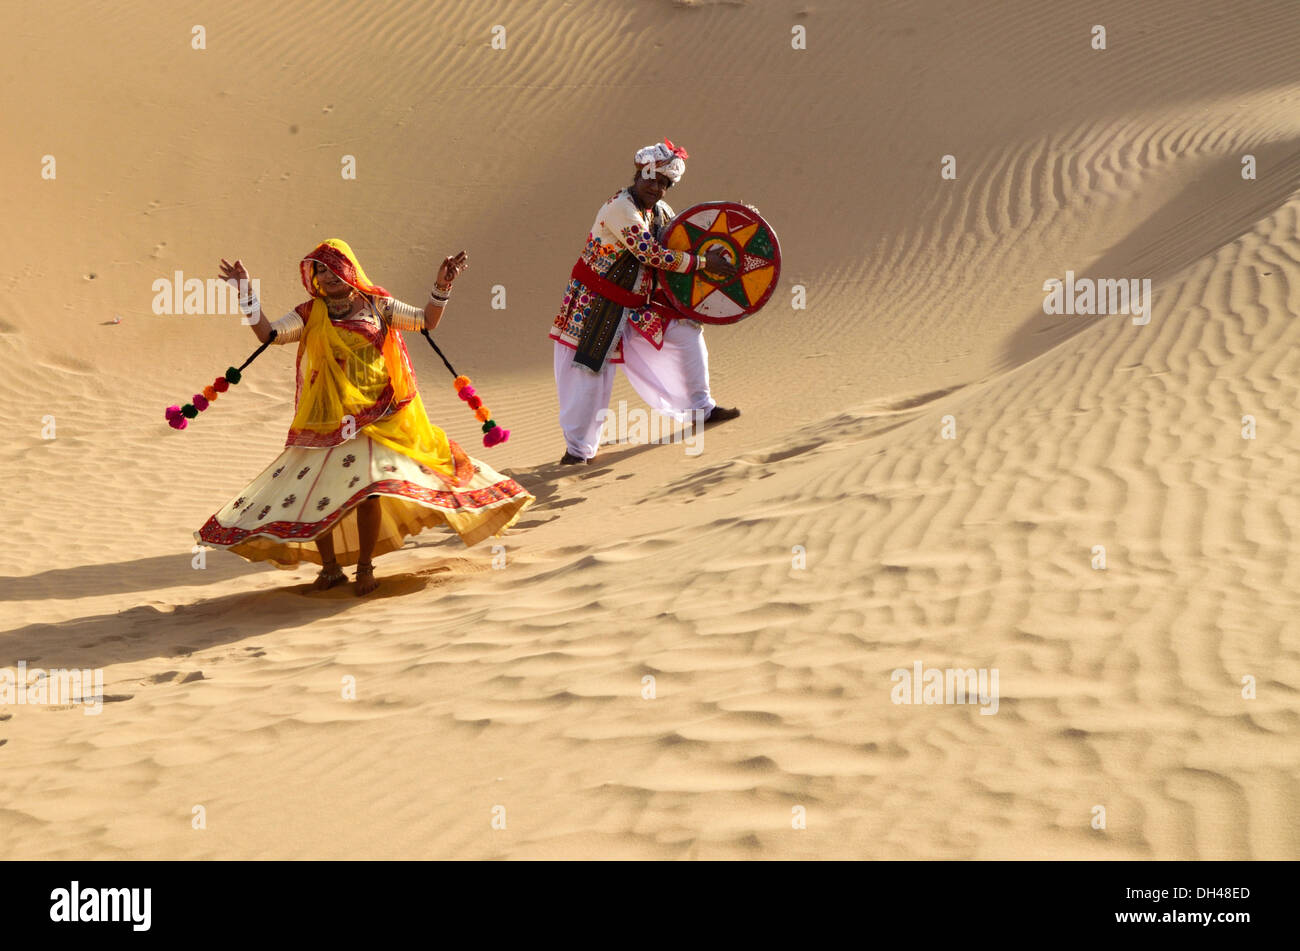 Homme jouant de Duff et femme dansant sur les sables du désert Jaisalmer Rajasthan Inde Asie M.# 704J et M.# 704J Banque D'Images